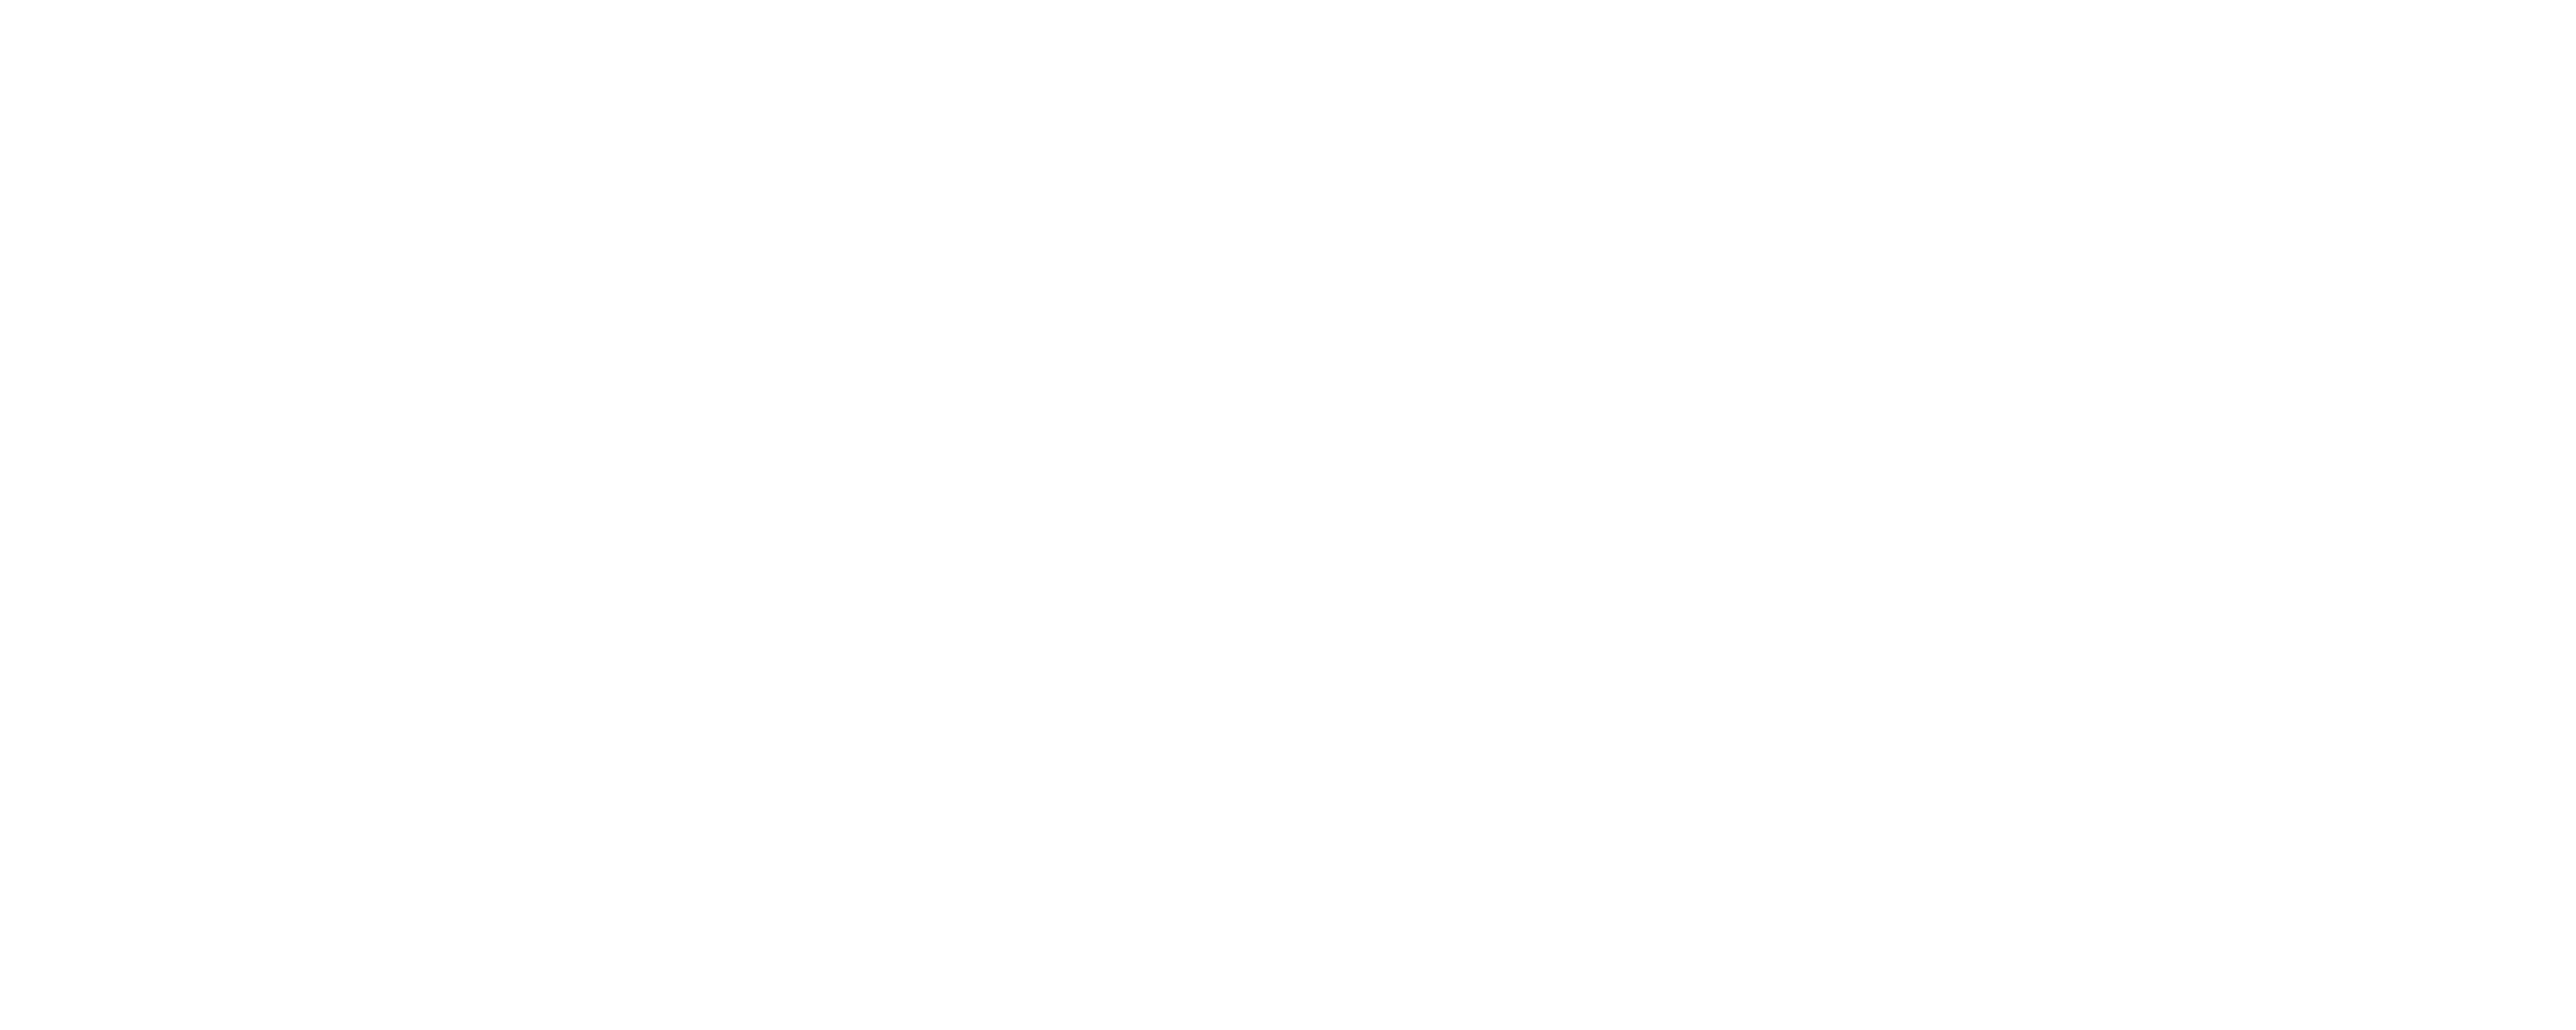 مصر من الأعلى